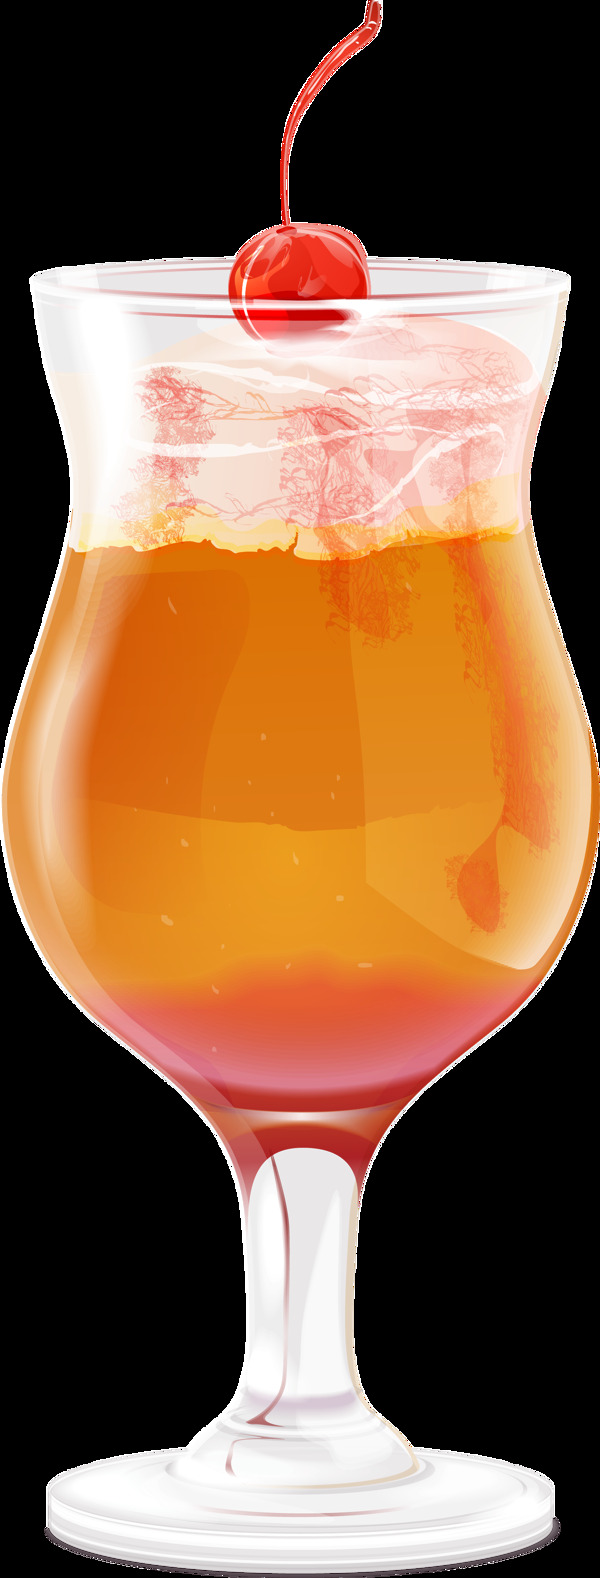 冰凉夏日清爽橙汁透明饮料素材